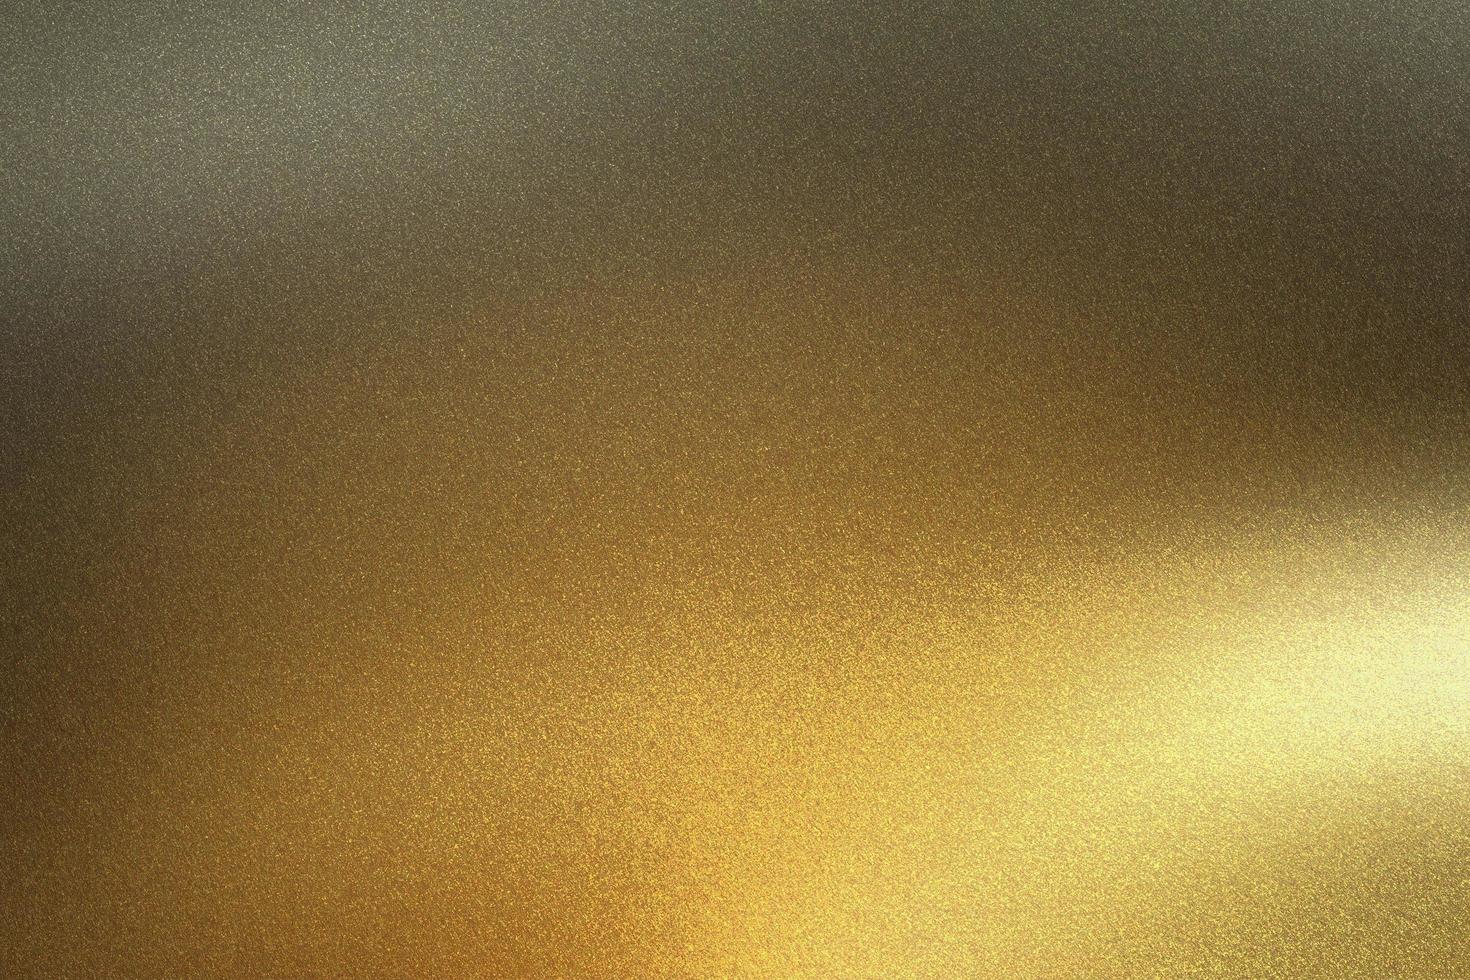 luz que brilla sobre una lámina de metal dorado en una habitación oscura, fondo de textura abstracta foto